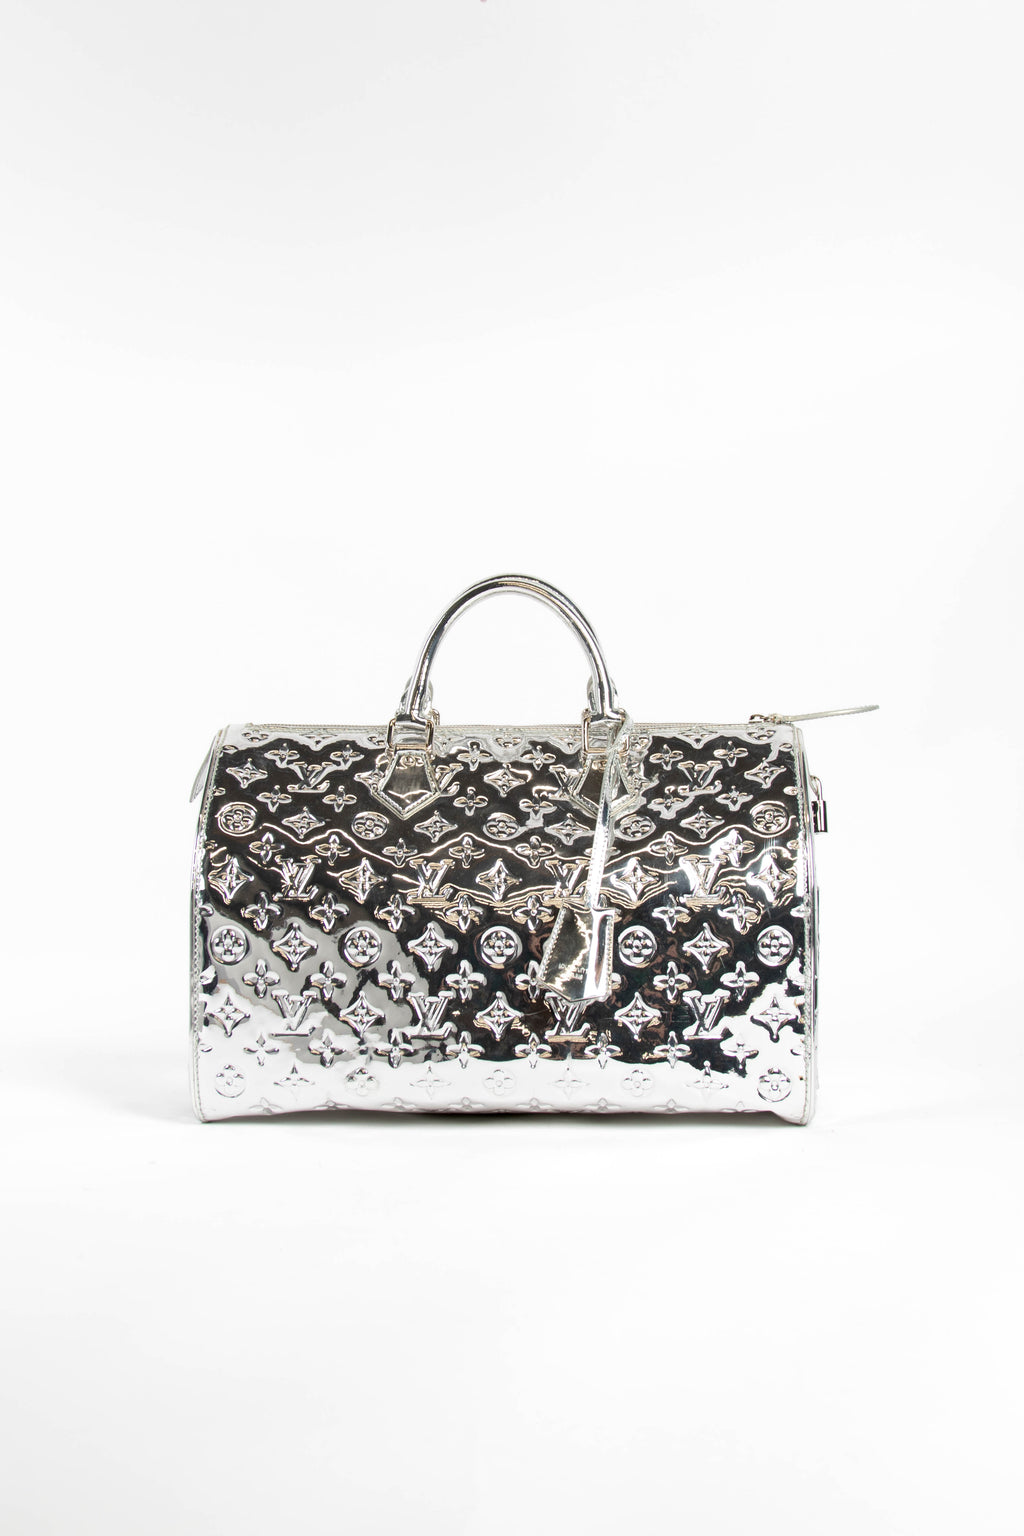 RARE Louis Vuitton Silver Mirior Speedy 35 Shoulder Bag